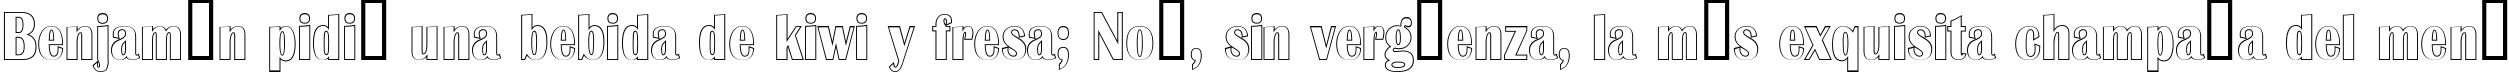 Пример написания шрифтом a_AlbionicNrOtl текста на испанском